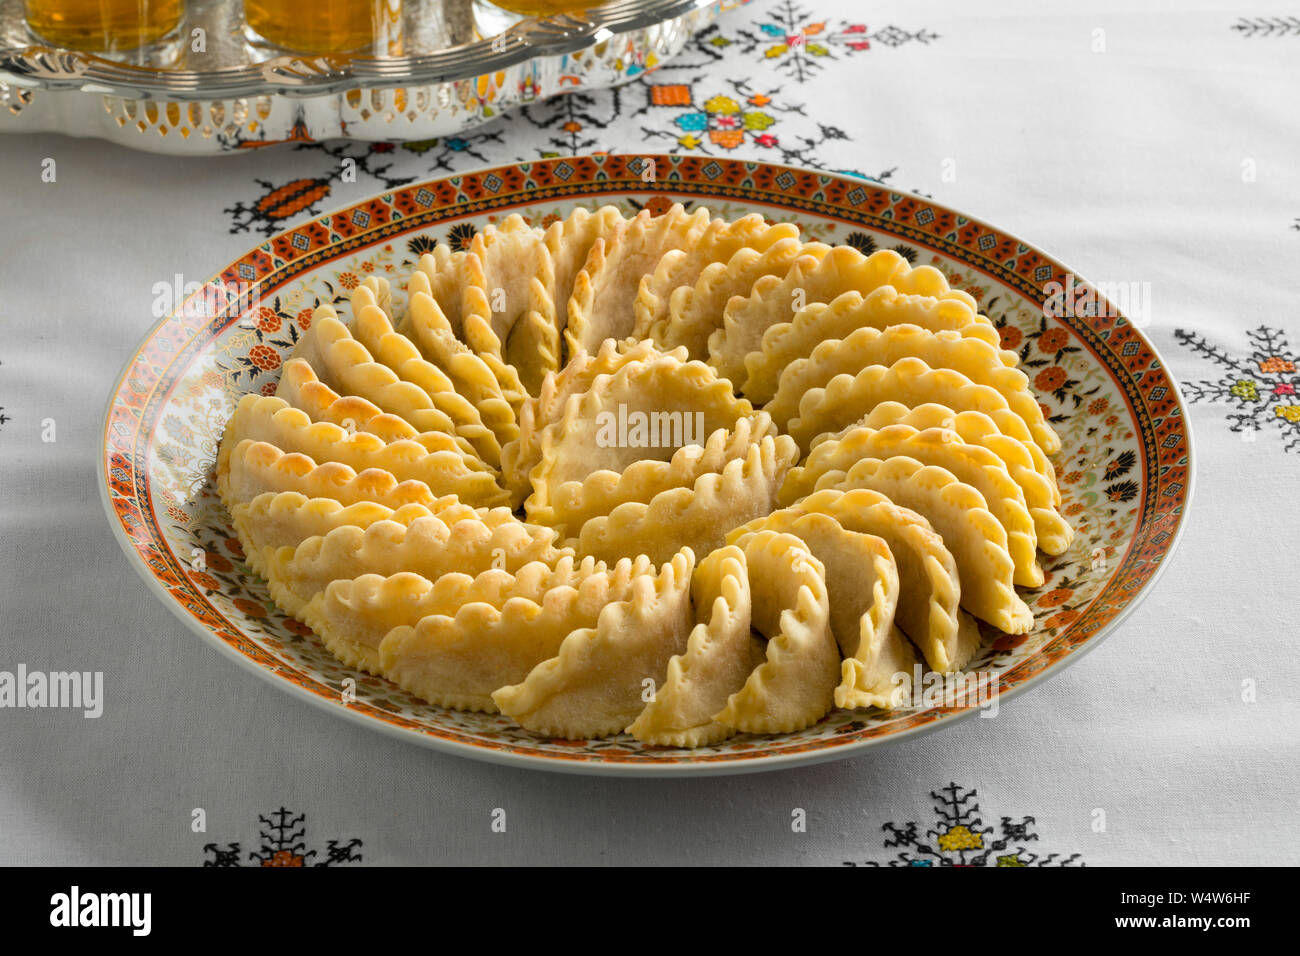 Avec le plat de fête traditionnel cornes de gazelle marocaine et d'un plateau sur une nappe brodée Banque D'Images